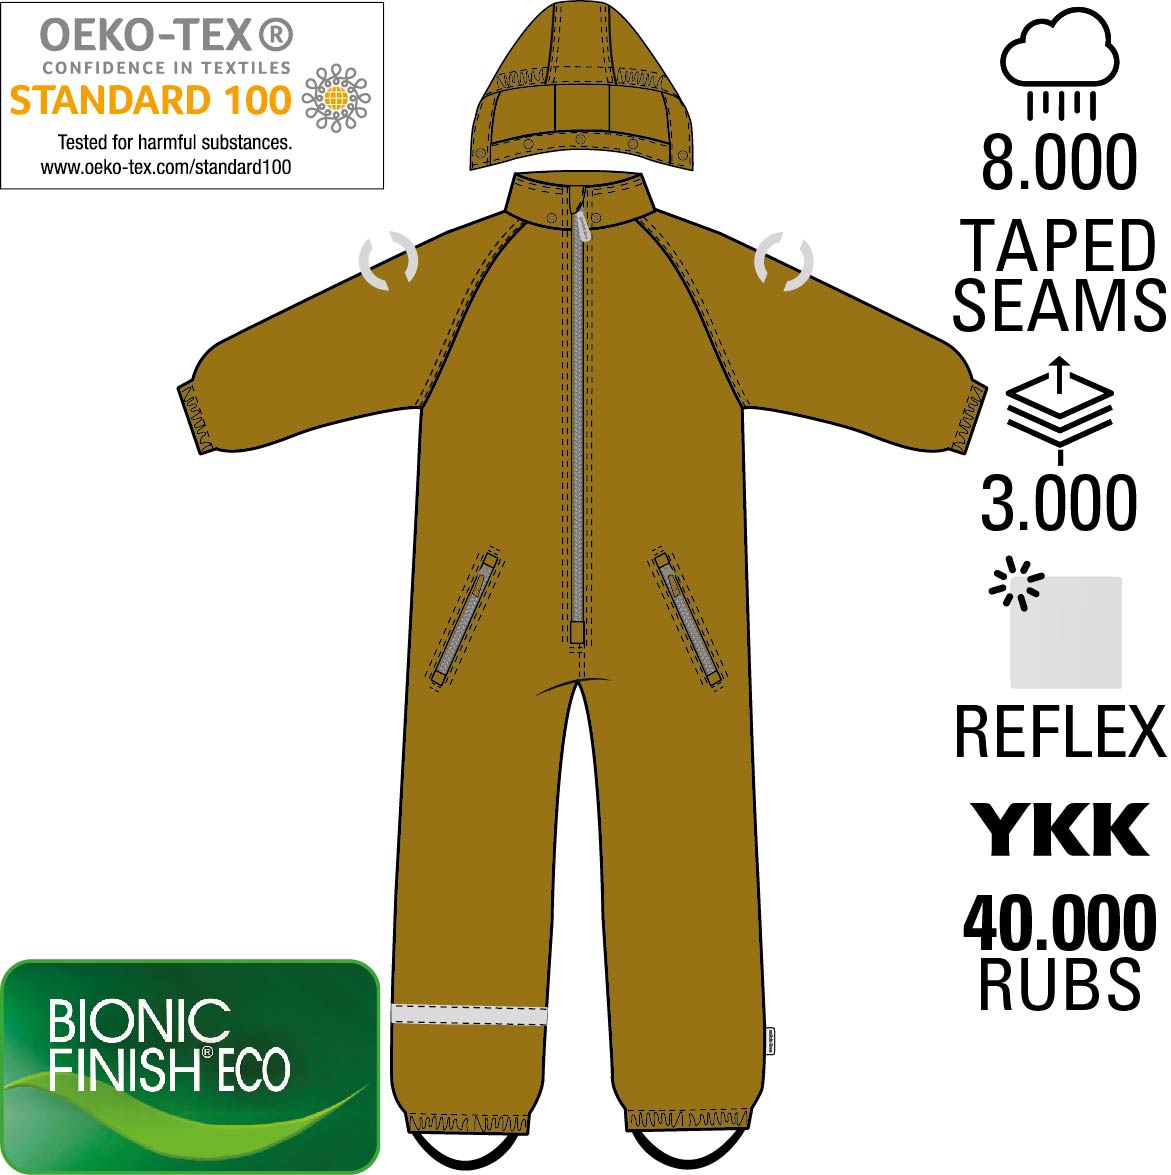 Mikk-Line Snow Suit Junior, Golden Brown Lasteriided - HellyK - Kvaliteetsed lasteriided, villariided, barefoot jalatsid